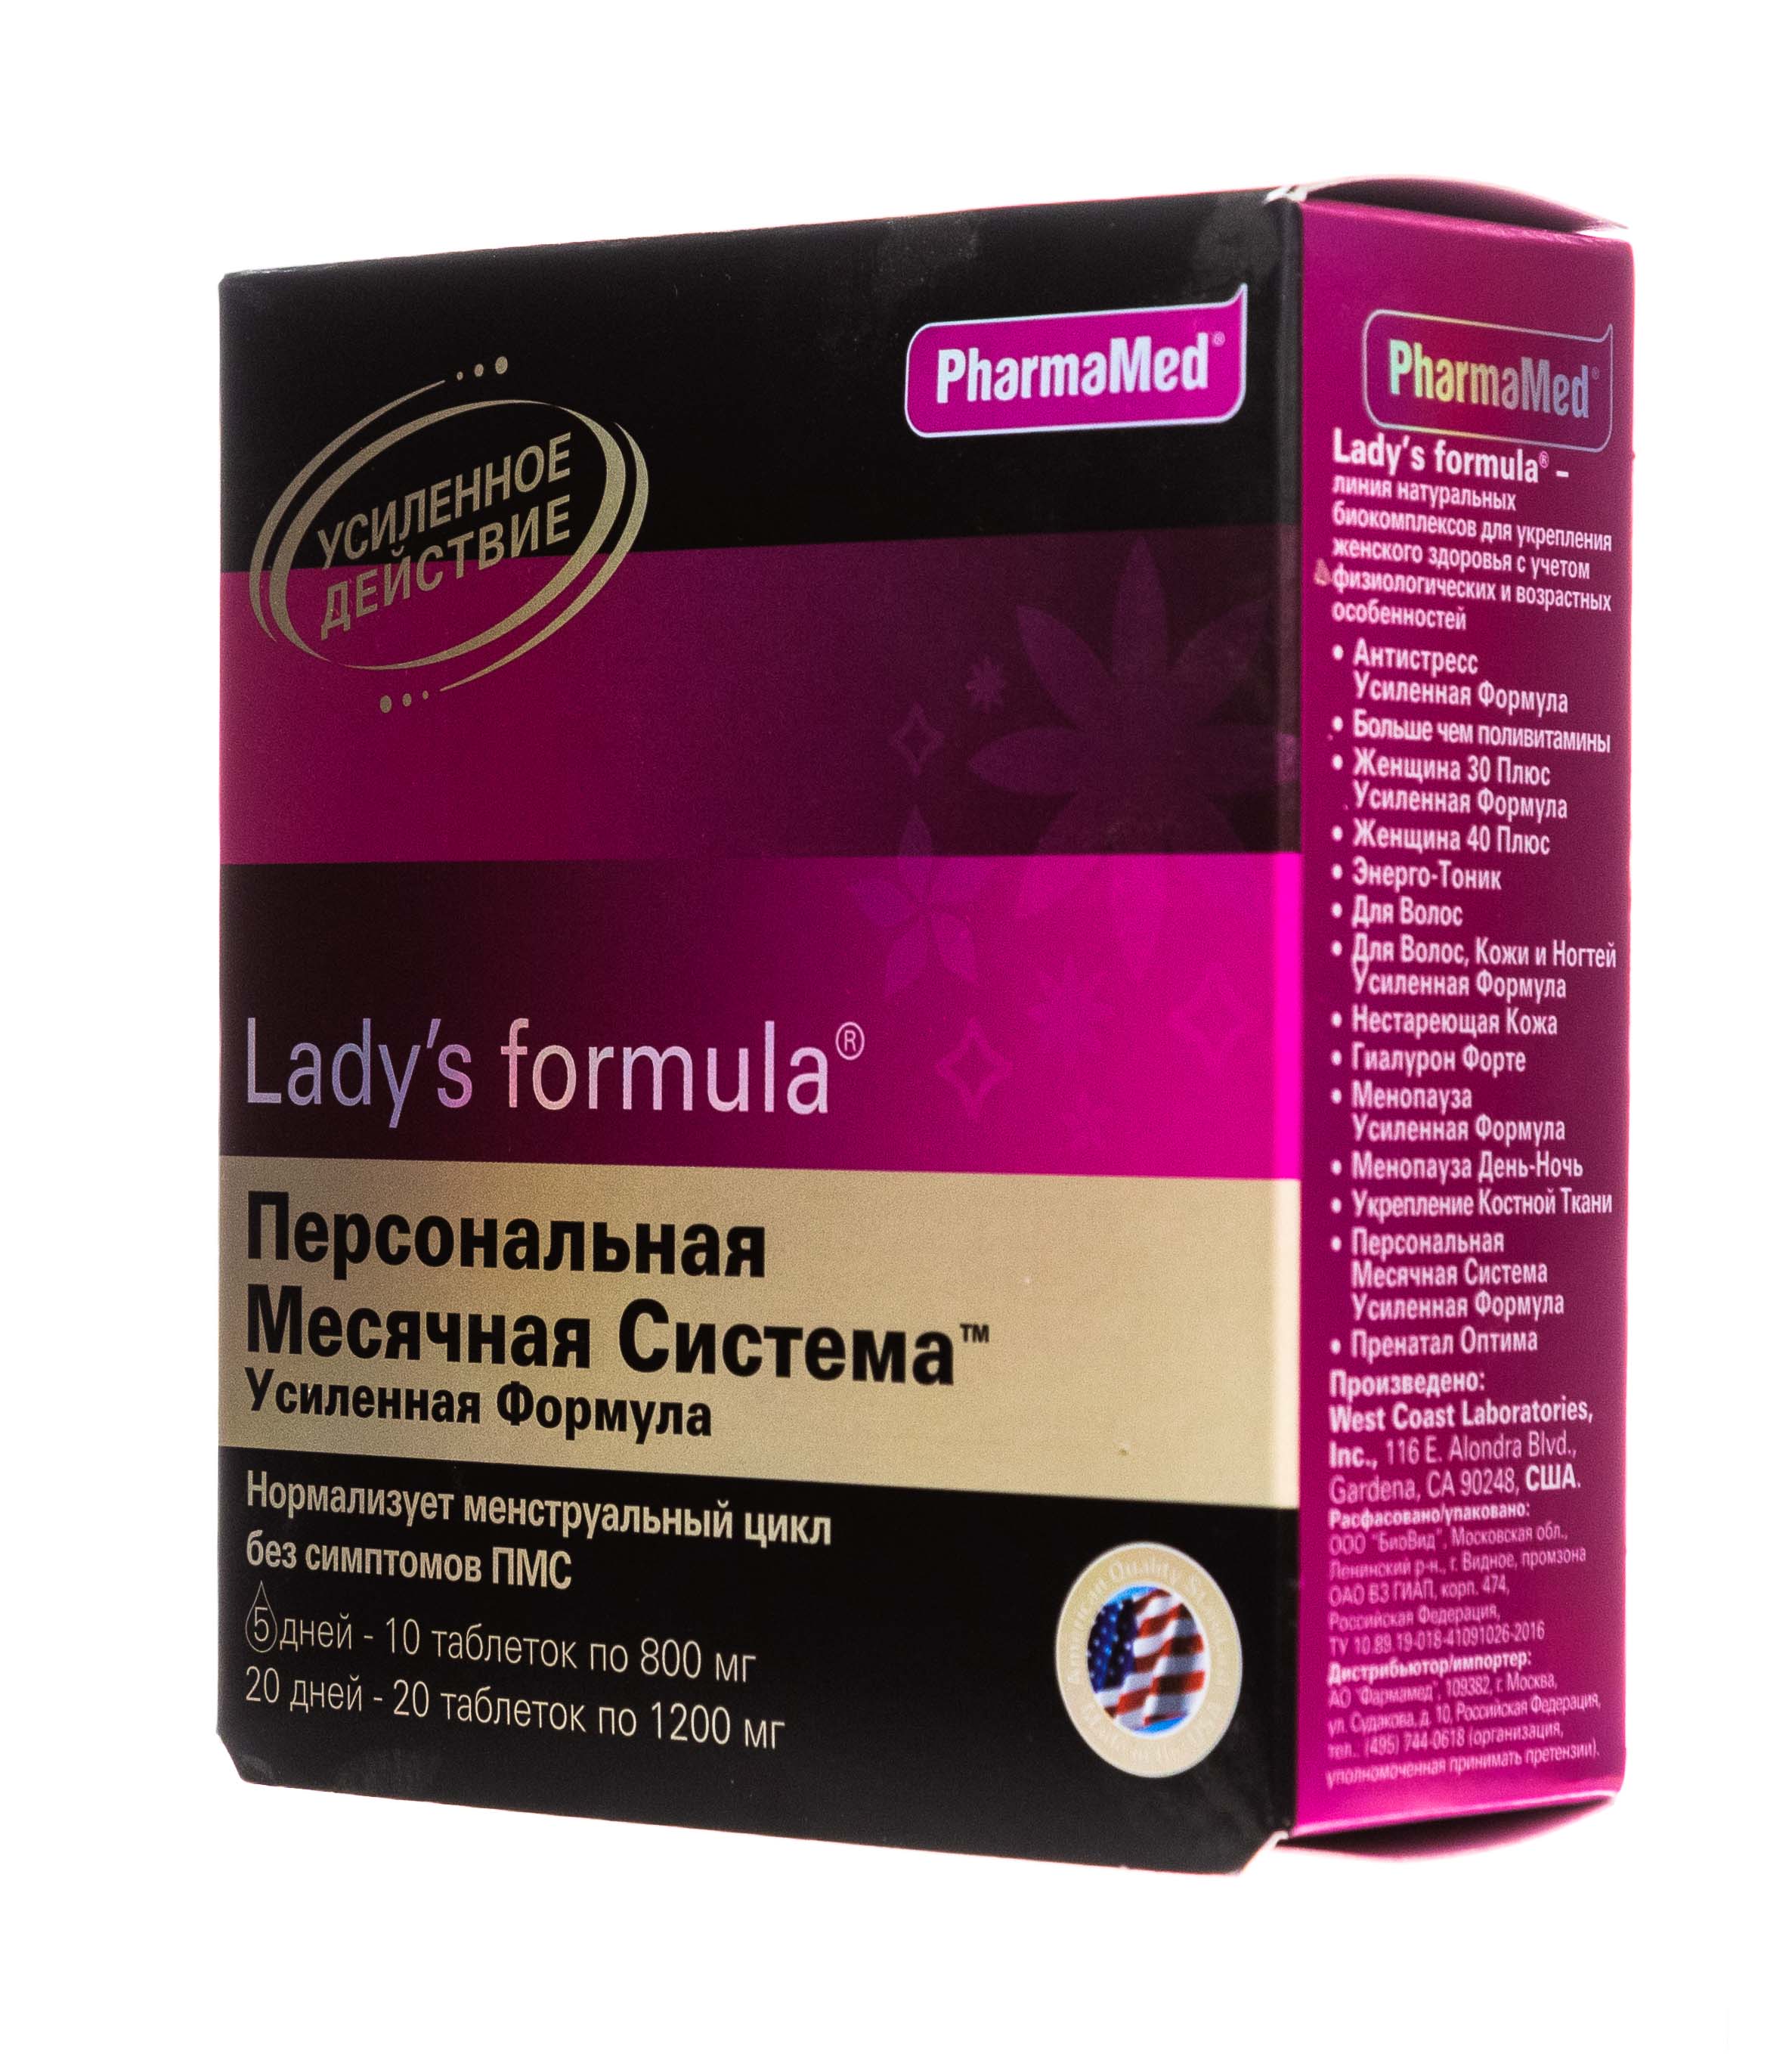 Ледис формула менопауза купить в аптеке. Lady's Formula (ледис формула). Леди формула усилкнная. Ледис формула Персональная месячная система усиленная формула. Ледис формула менопауза усиленная формула.